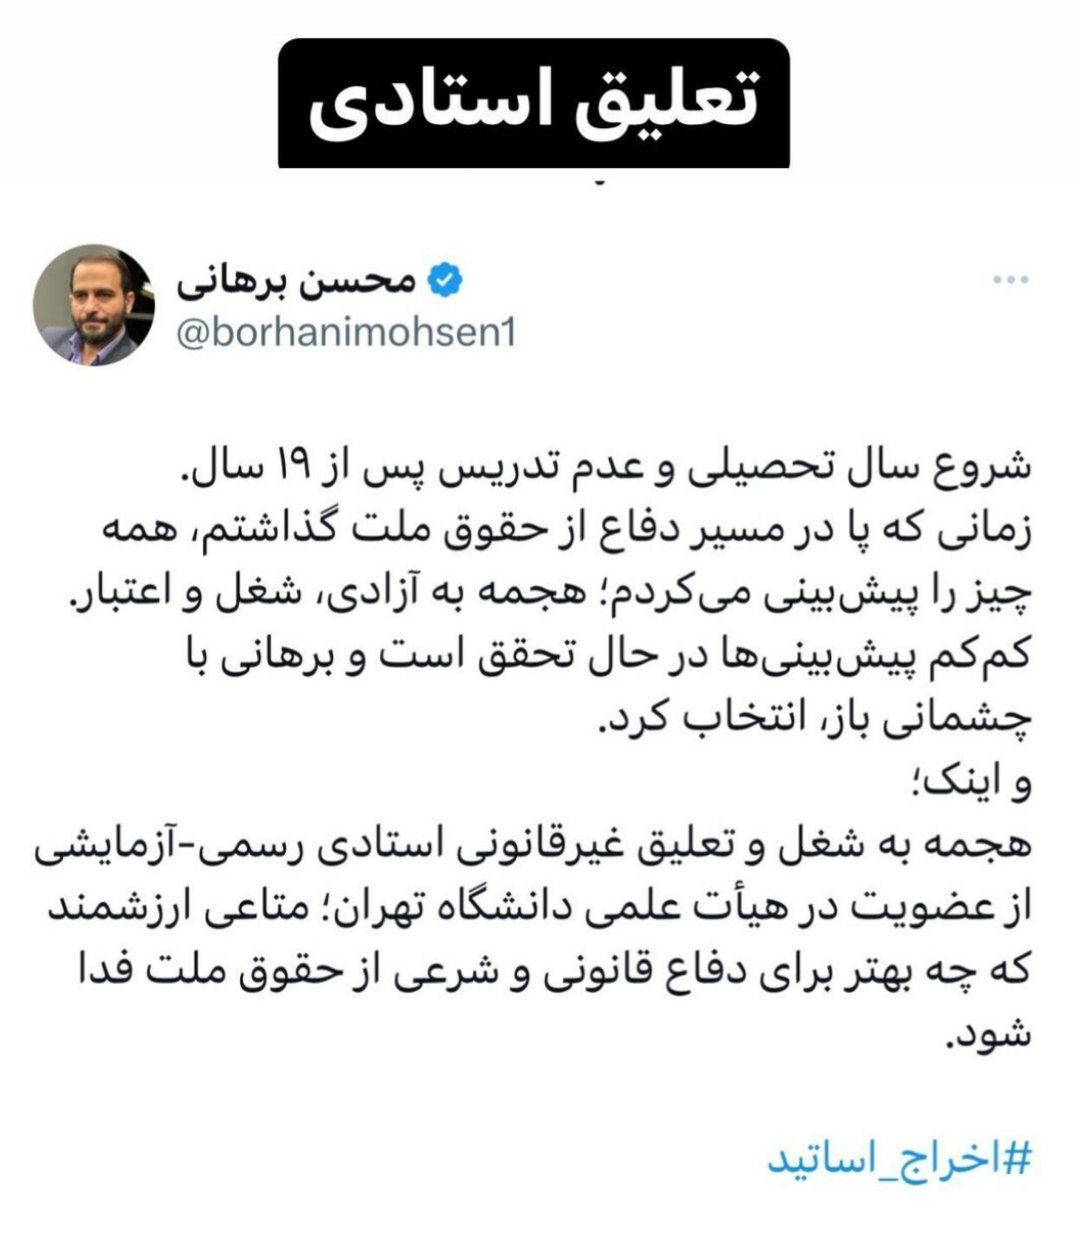 تعلیق محسن برهانی از عضویت در هیئت علمی دانشگاه تهران